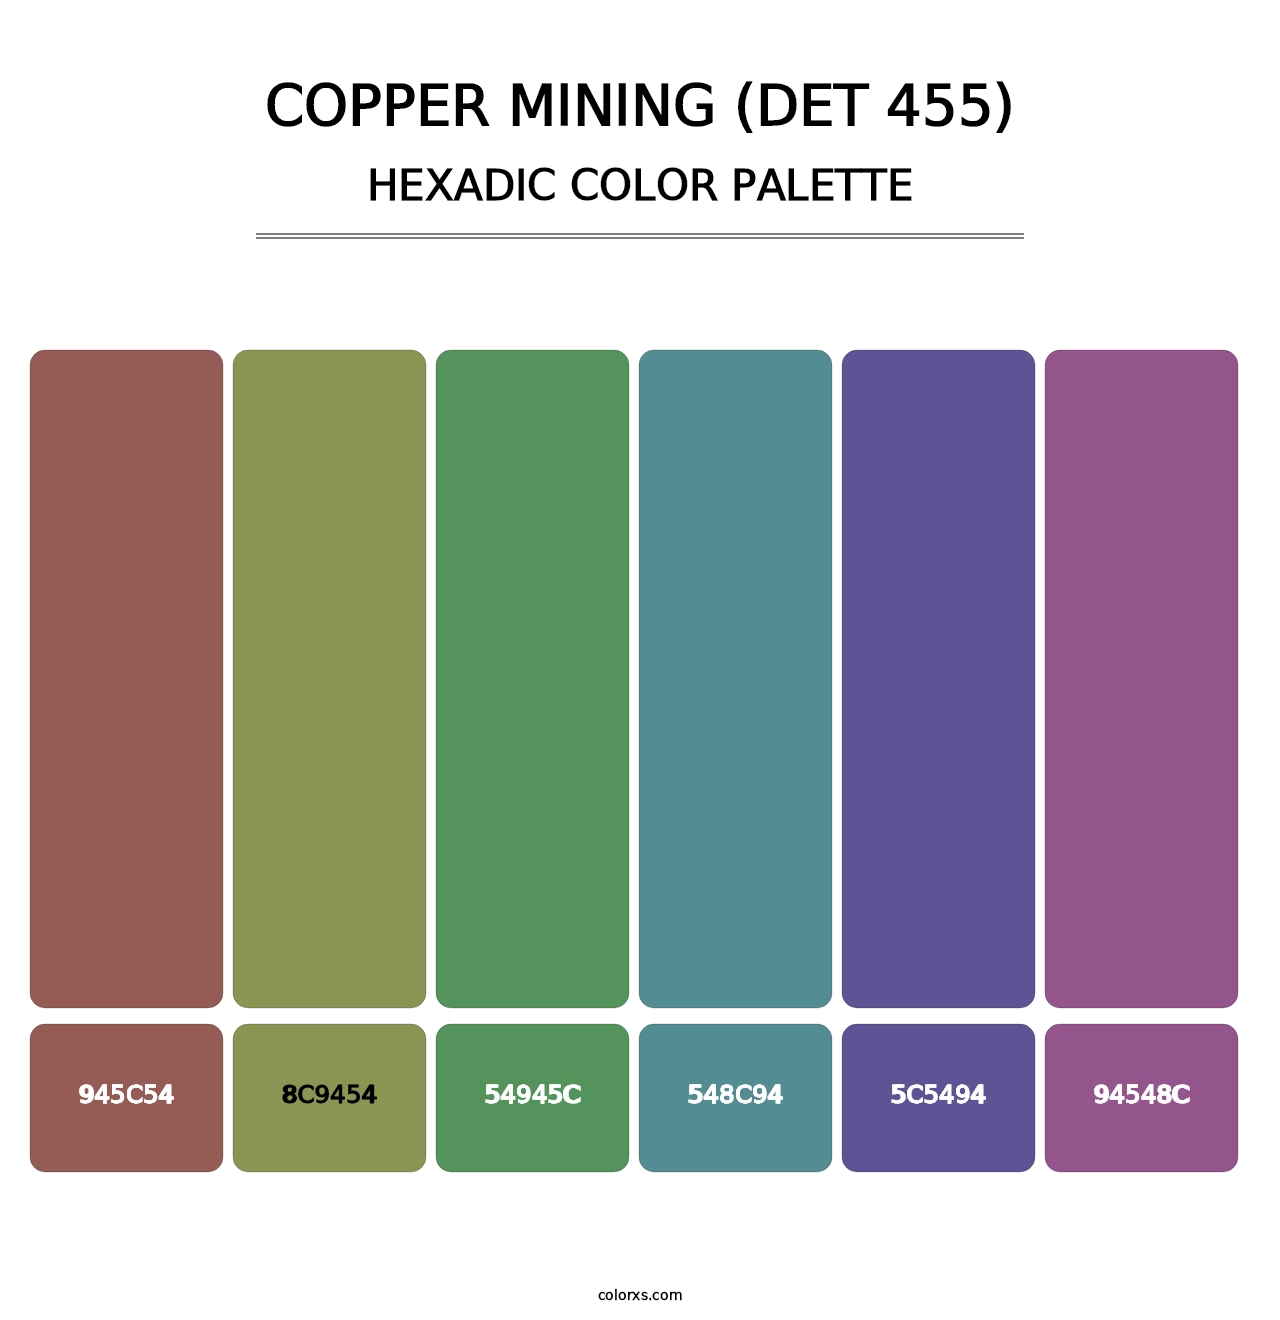 Copper Mining (DET 455) - Hexadic Color Palette